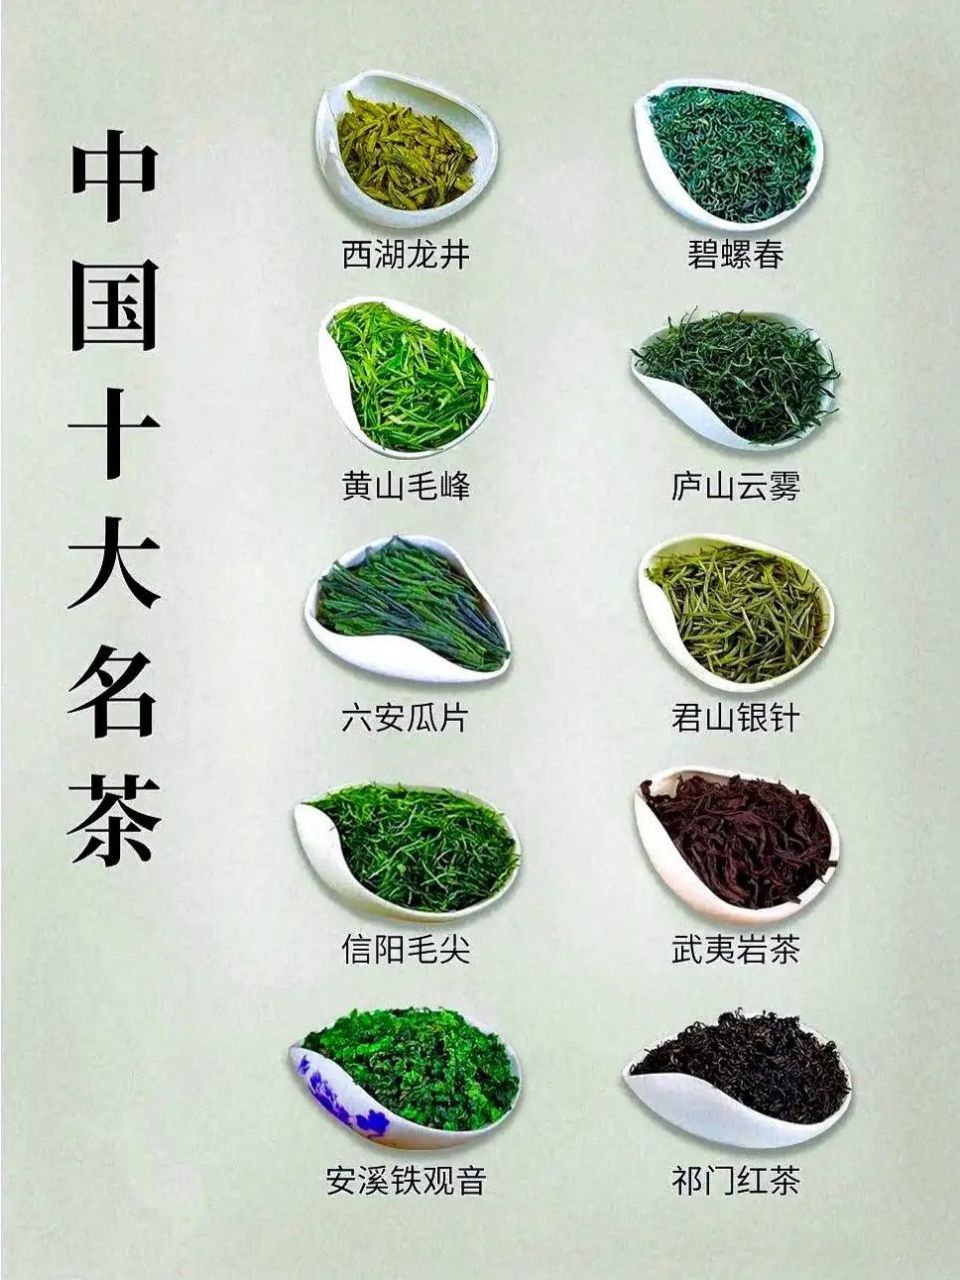 中国茶叶品牌十大排名图片